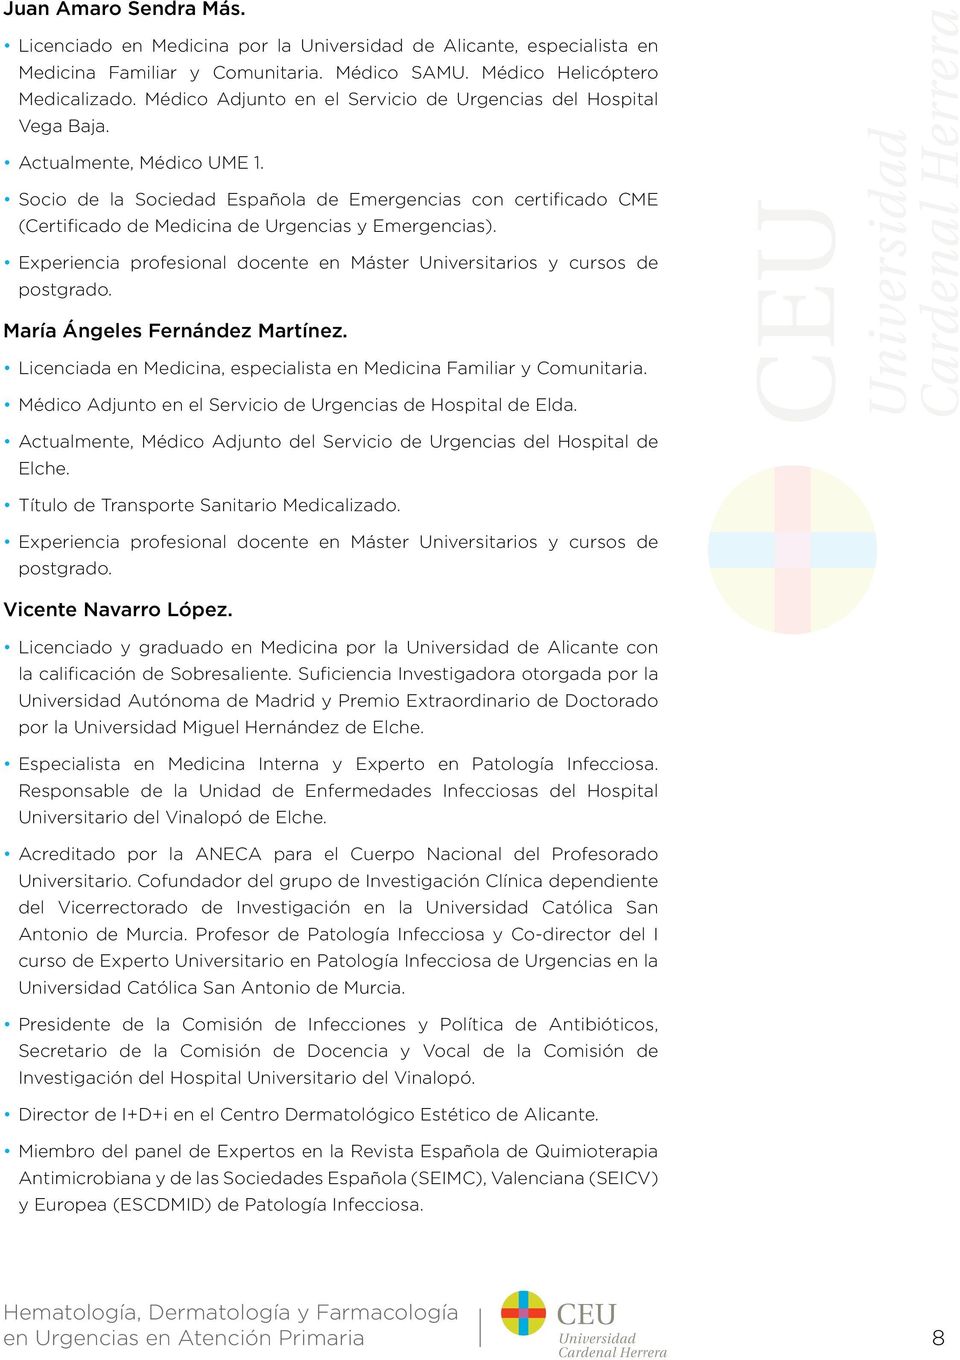 Socio de la Sociedad Española de Emergencias con certificado CME (Certificado de Medicina de Urgencias y Emergencias). Experiencia profesional docente en Máster Universitarios y cursos de postgrado.